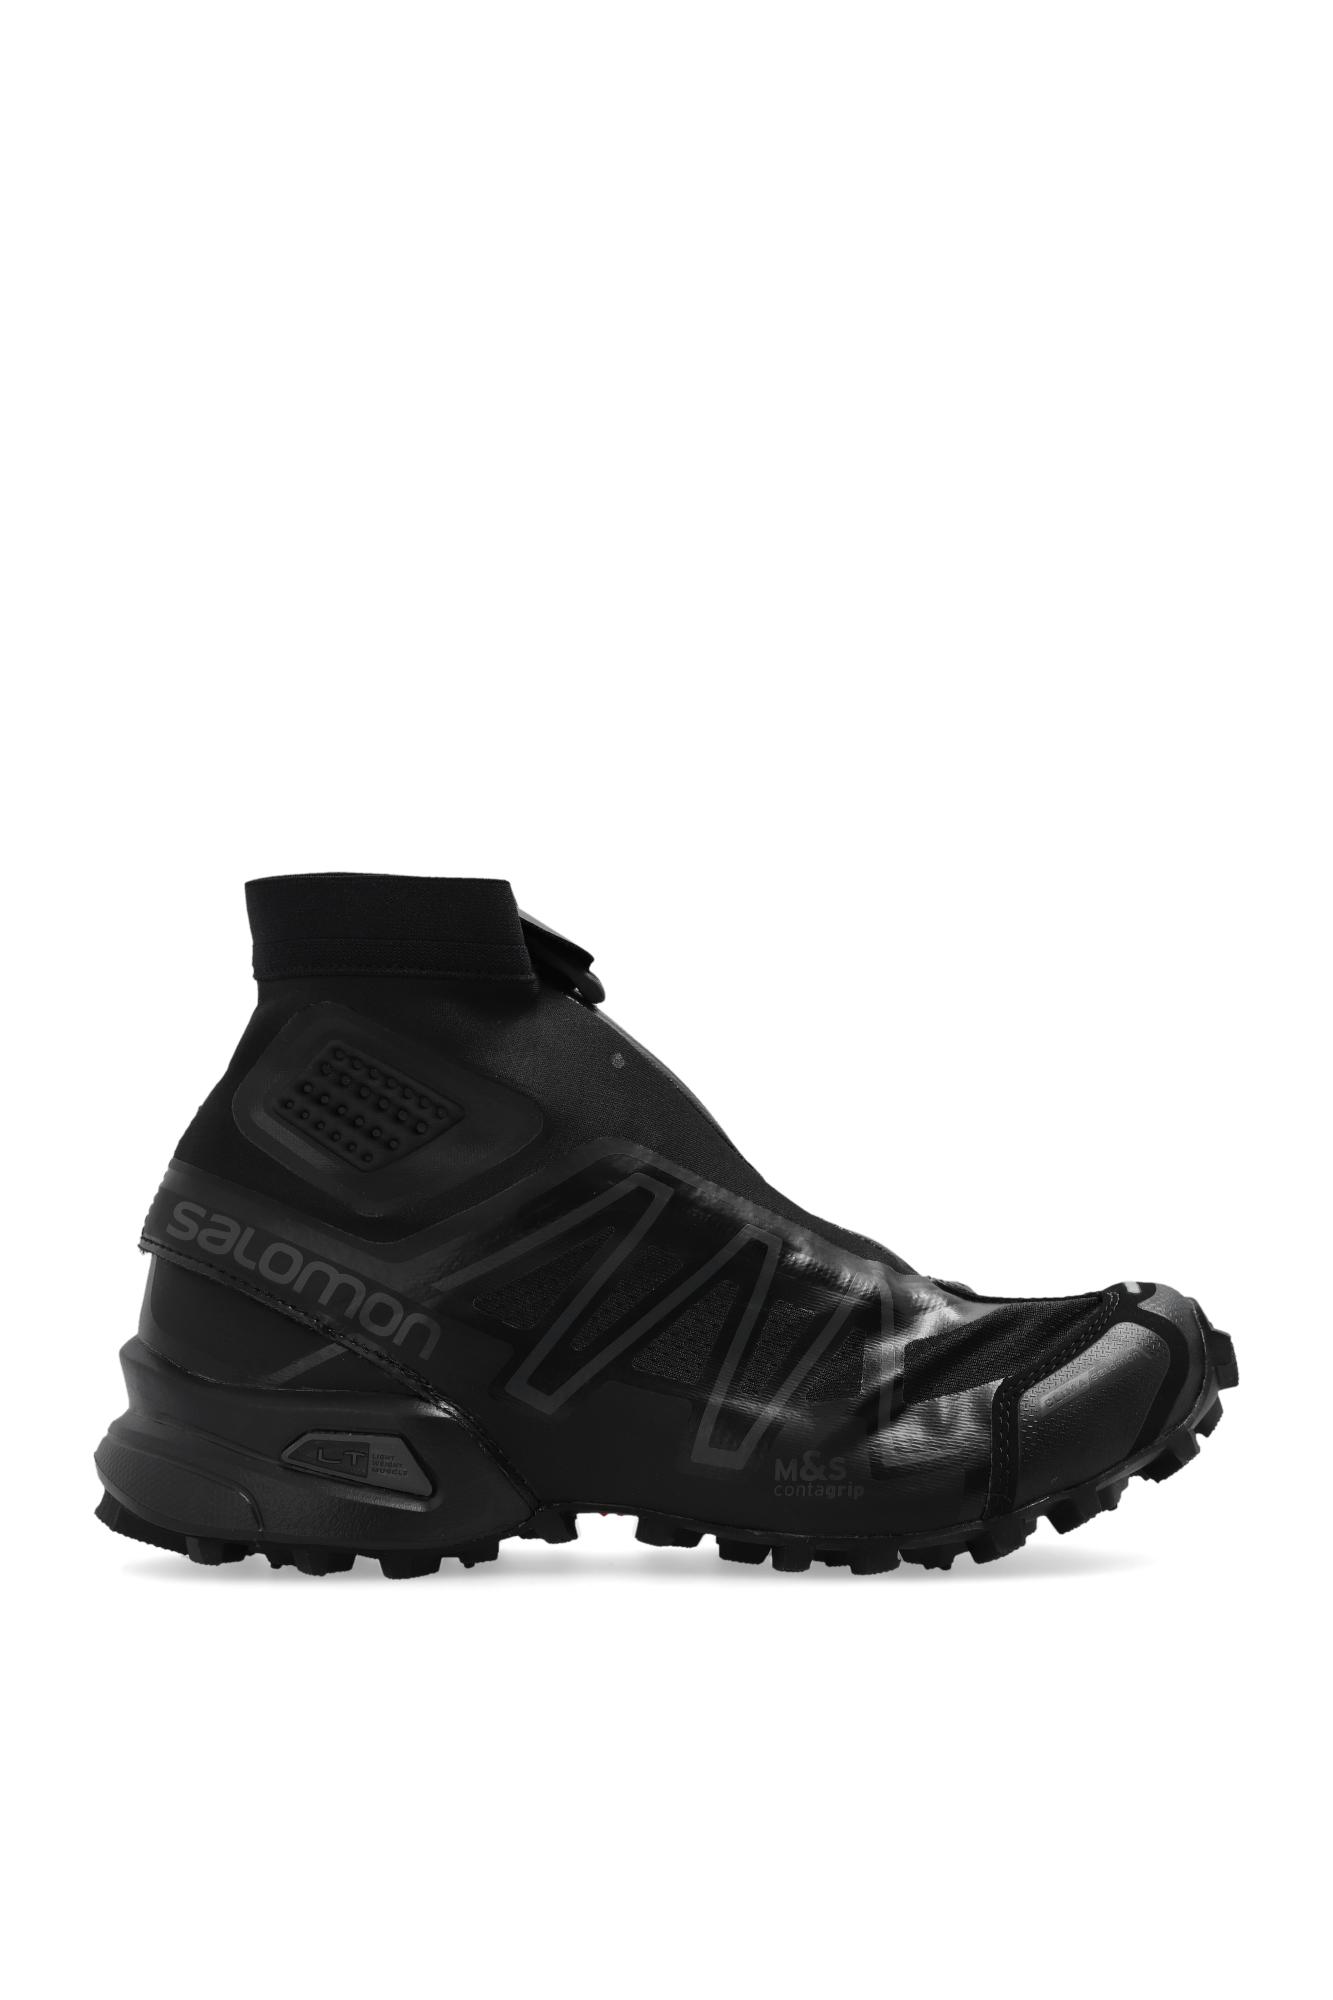 Salomon 'snowcross' Sneakers in Black | Lyst